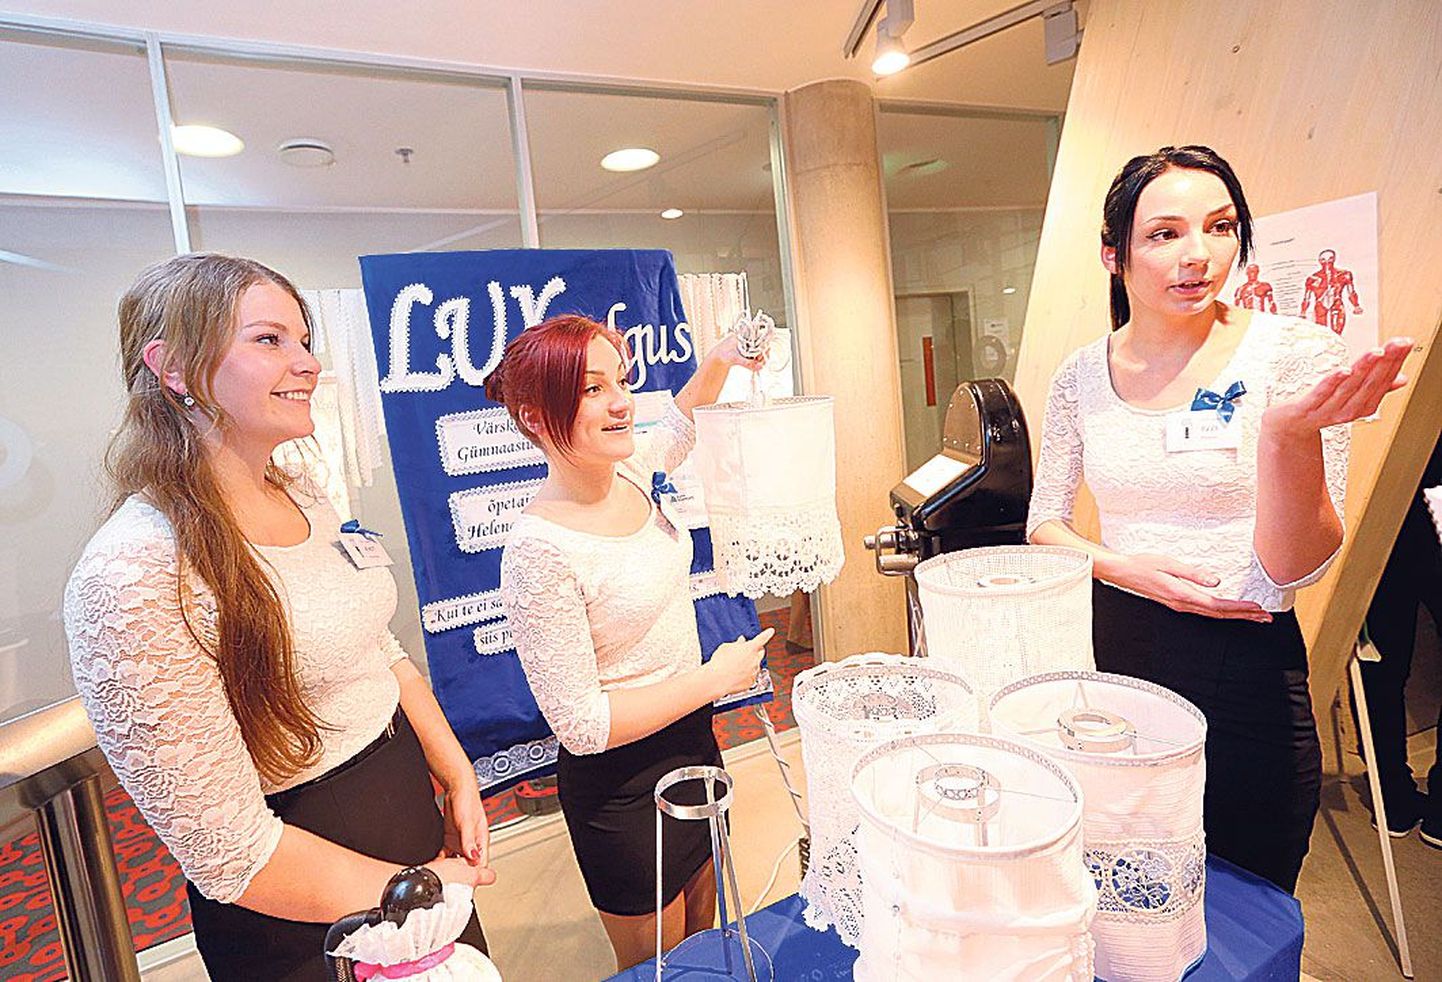 Õpilasfirma LUXvalgus nurgake võitis Euroopa õpilasfirmade laadal kõige paremini kujundatud stendi auhinna. Pildil Anet Suure (vasakult), Laura Tillo ja Elis Raudkett.